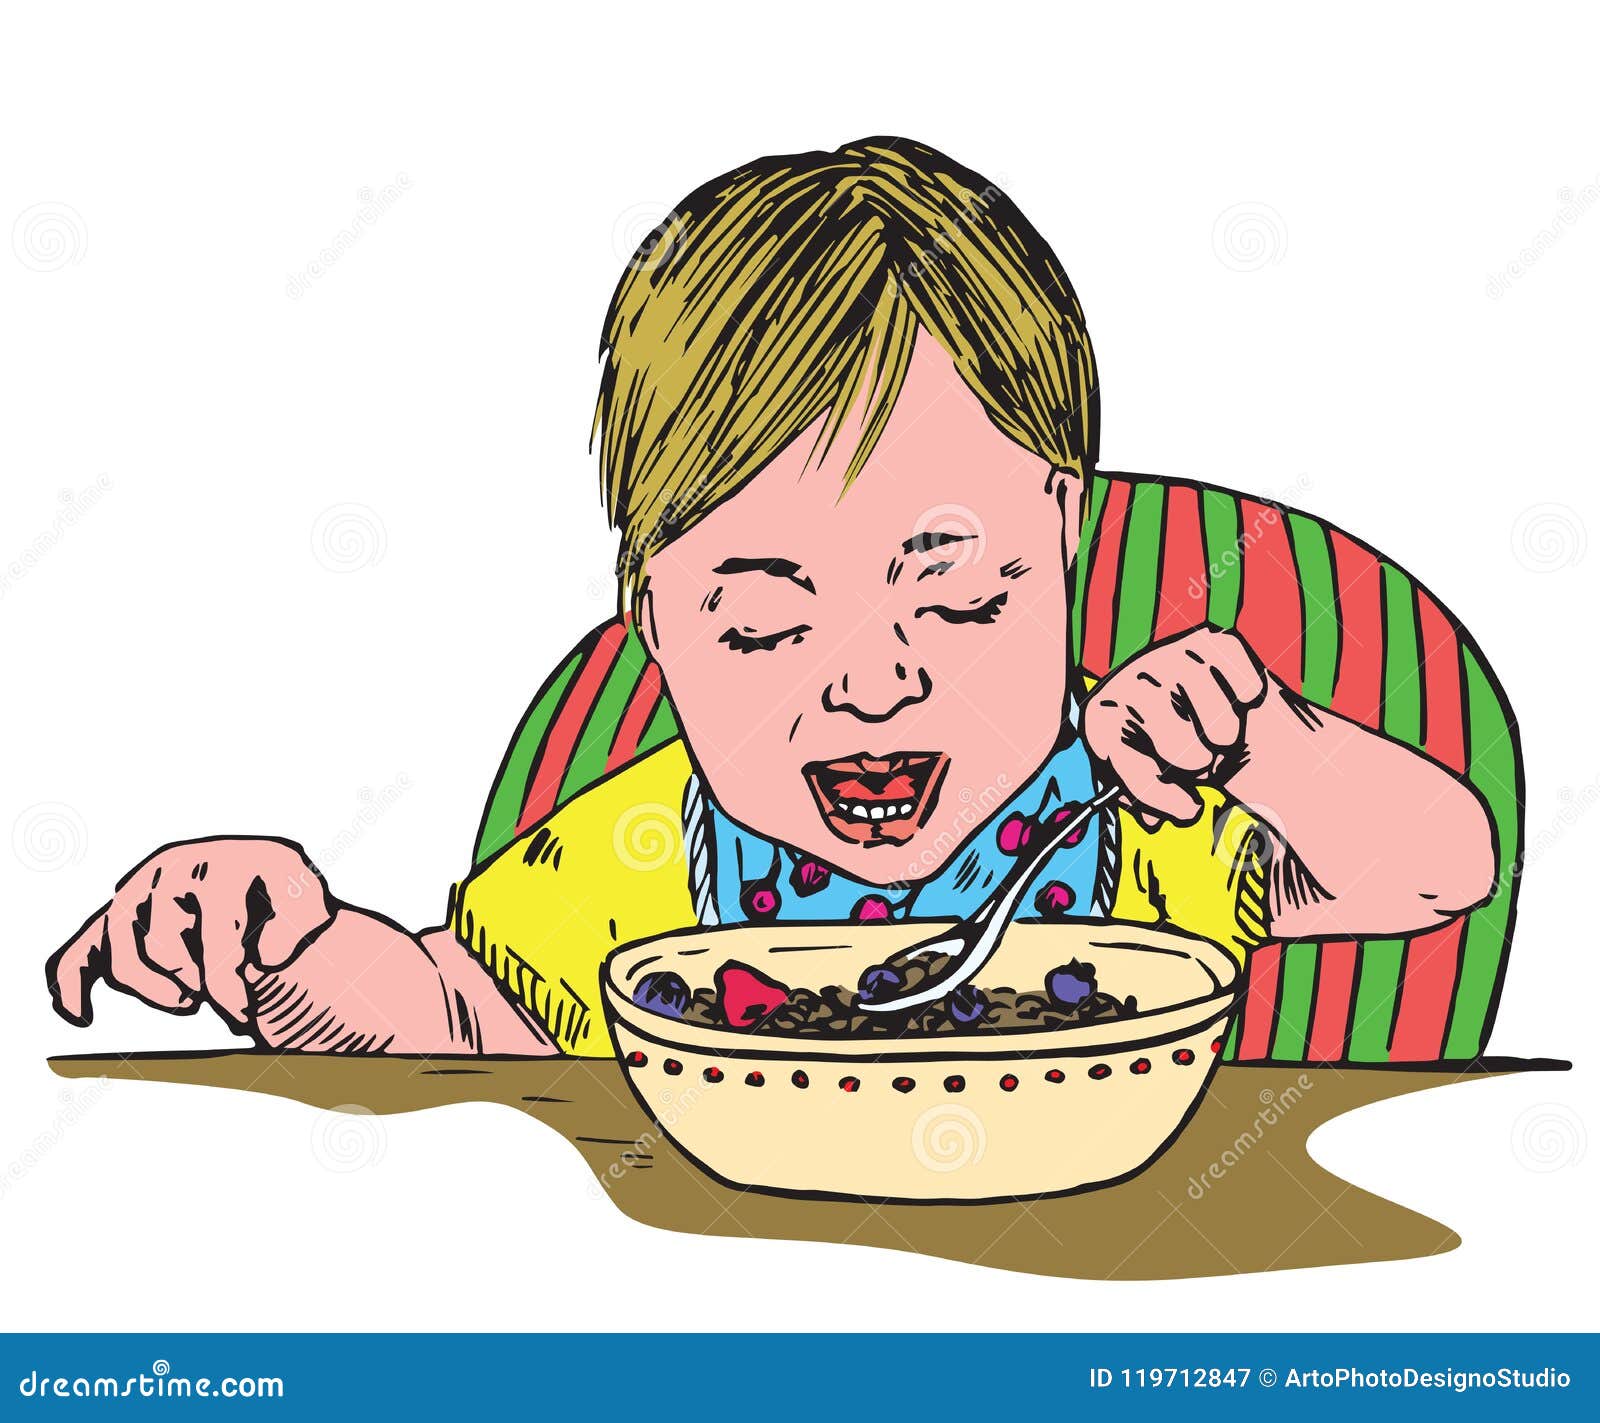 Дети кушают и плачут. Мальчик кушает и плачет. Иллюстрации мальчик не ест кашу. Малой сидит и ест иллюстрация. Ест кашу рисунок.